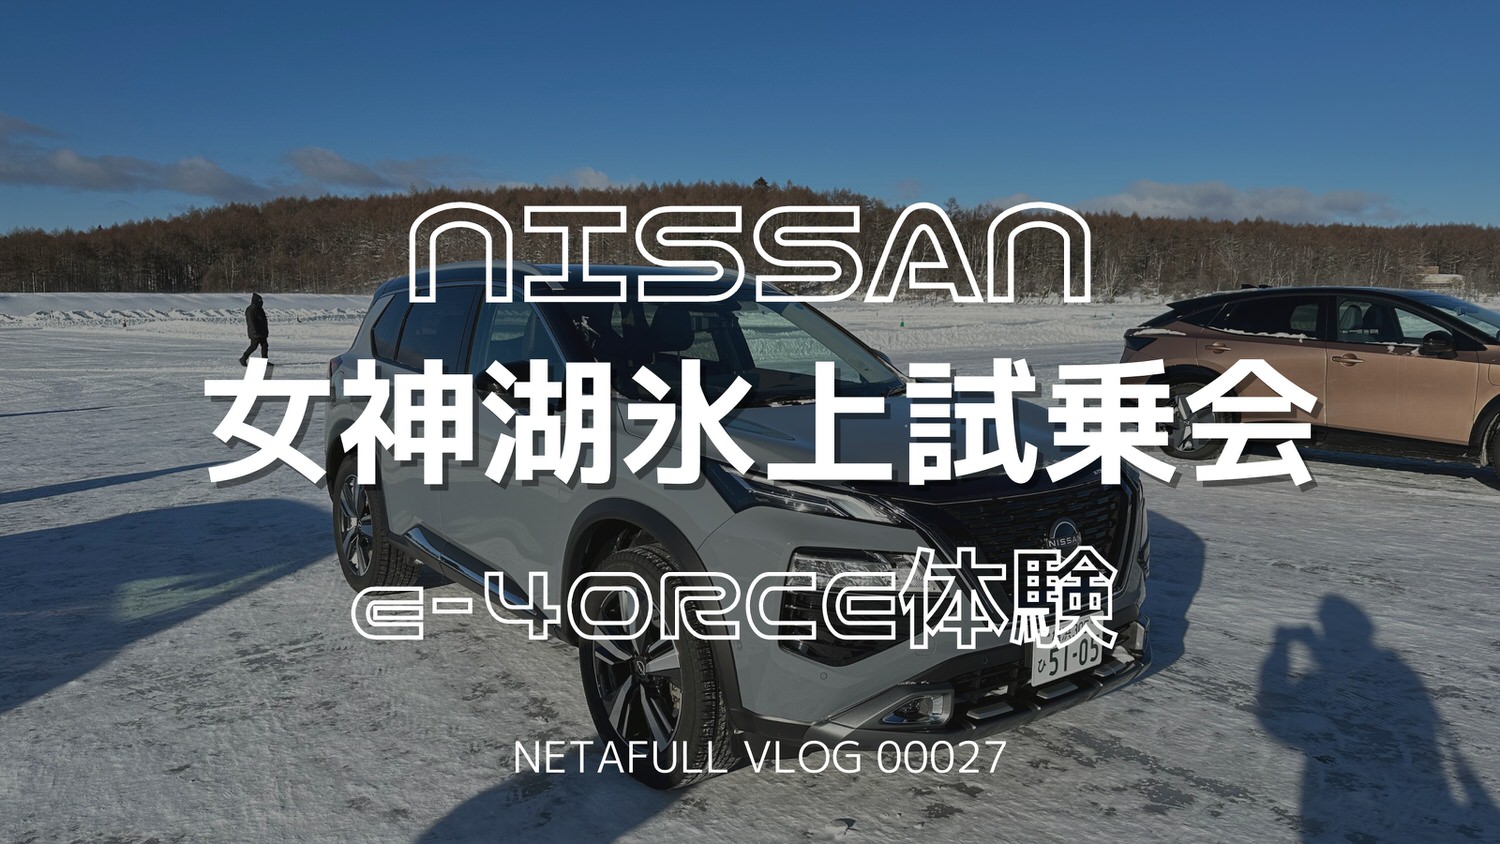 Nissan vlog title